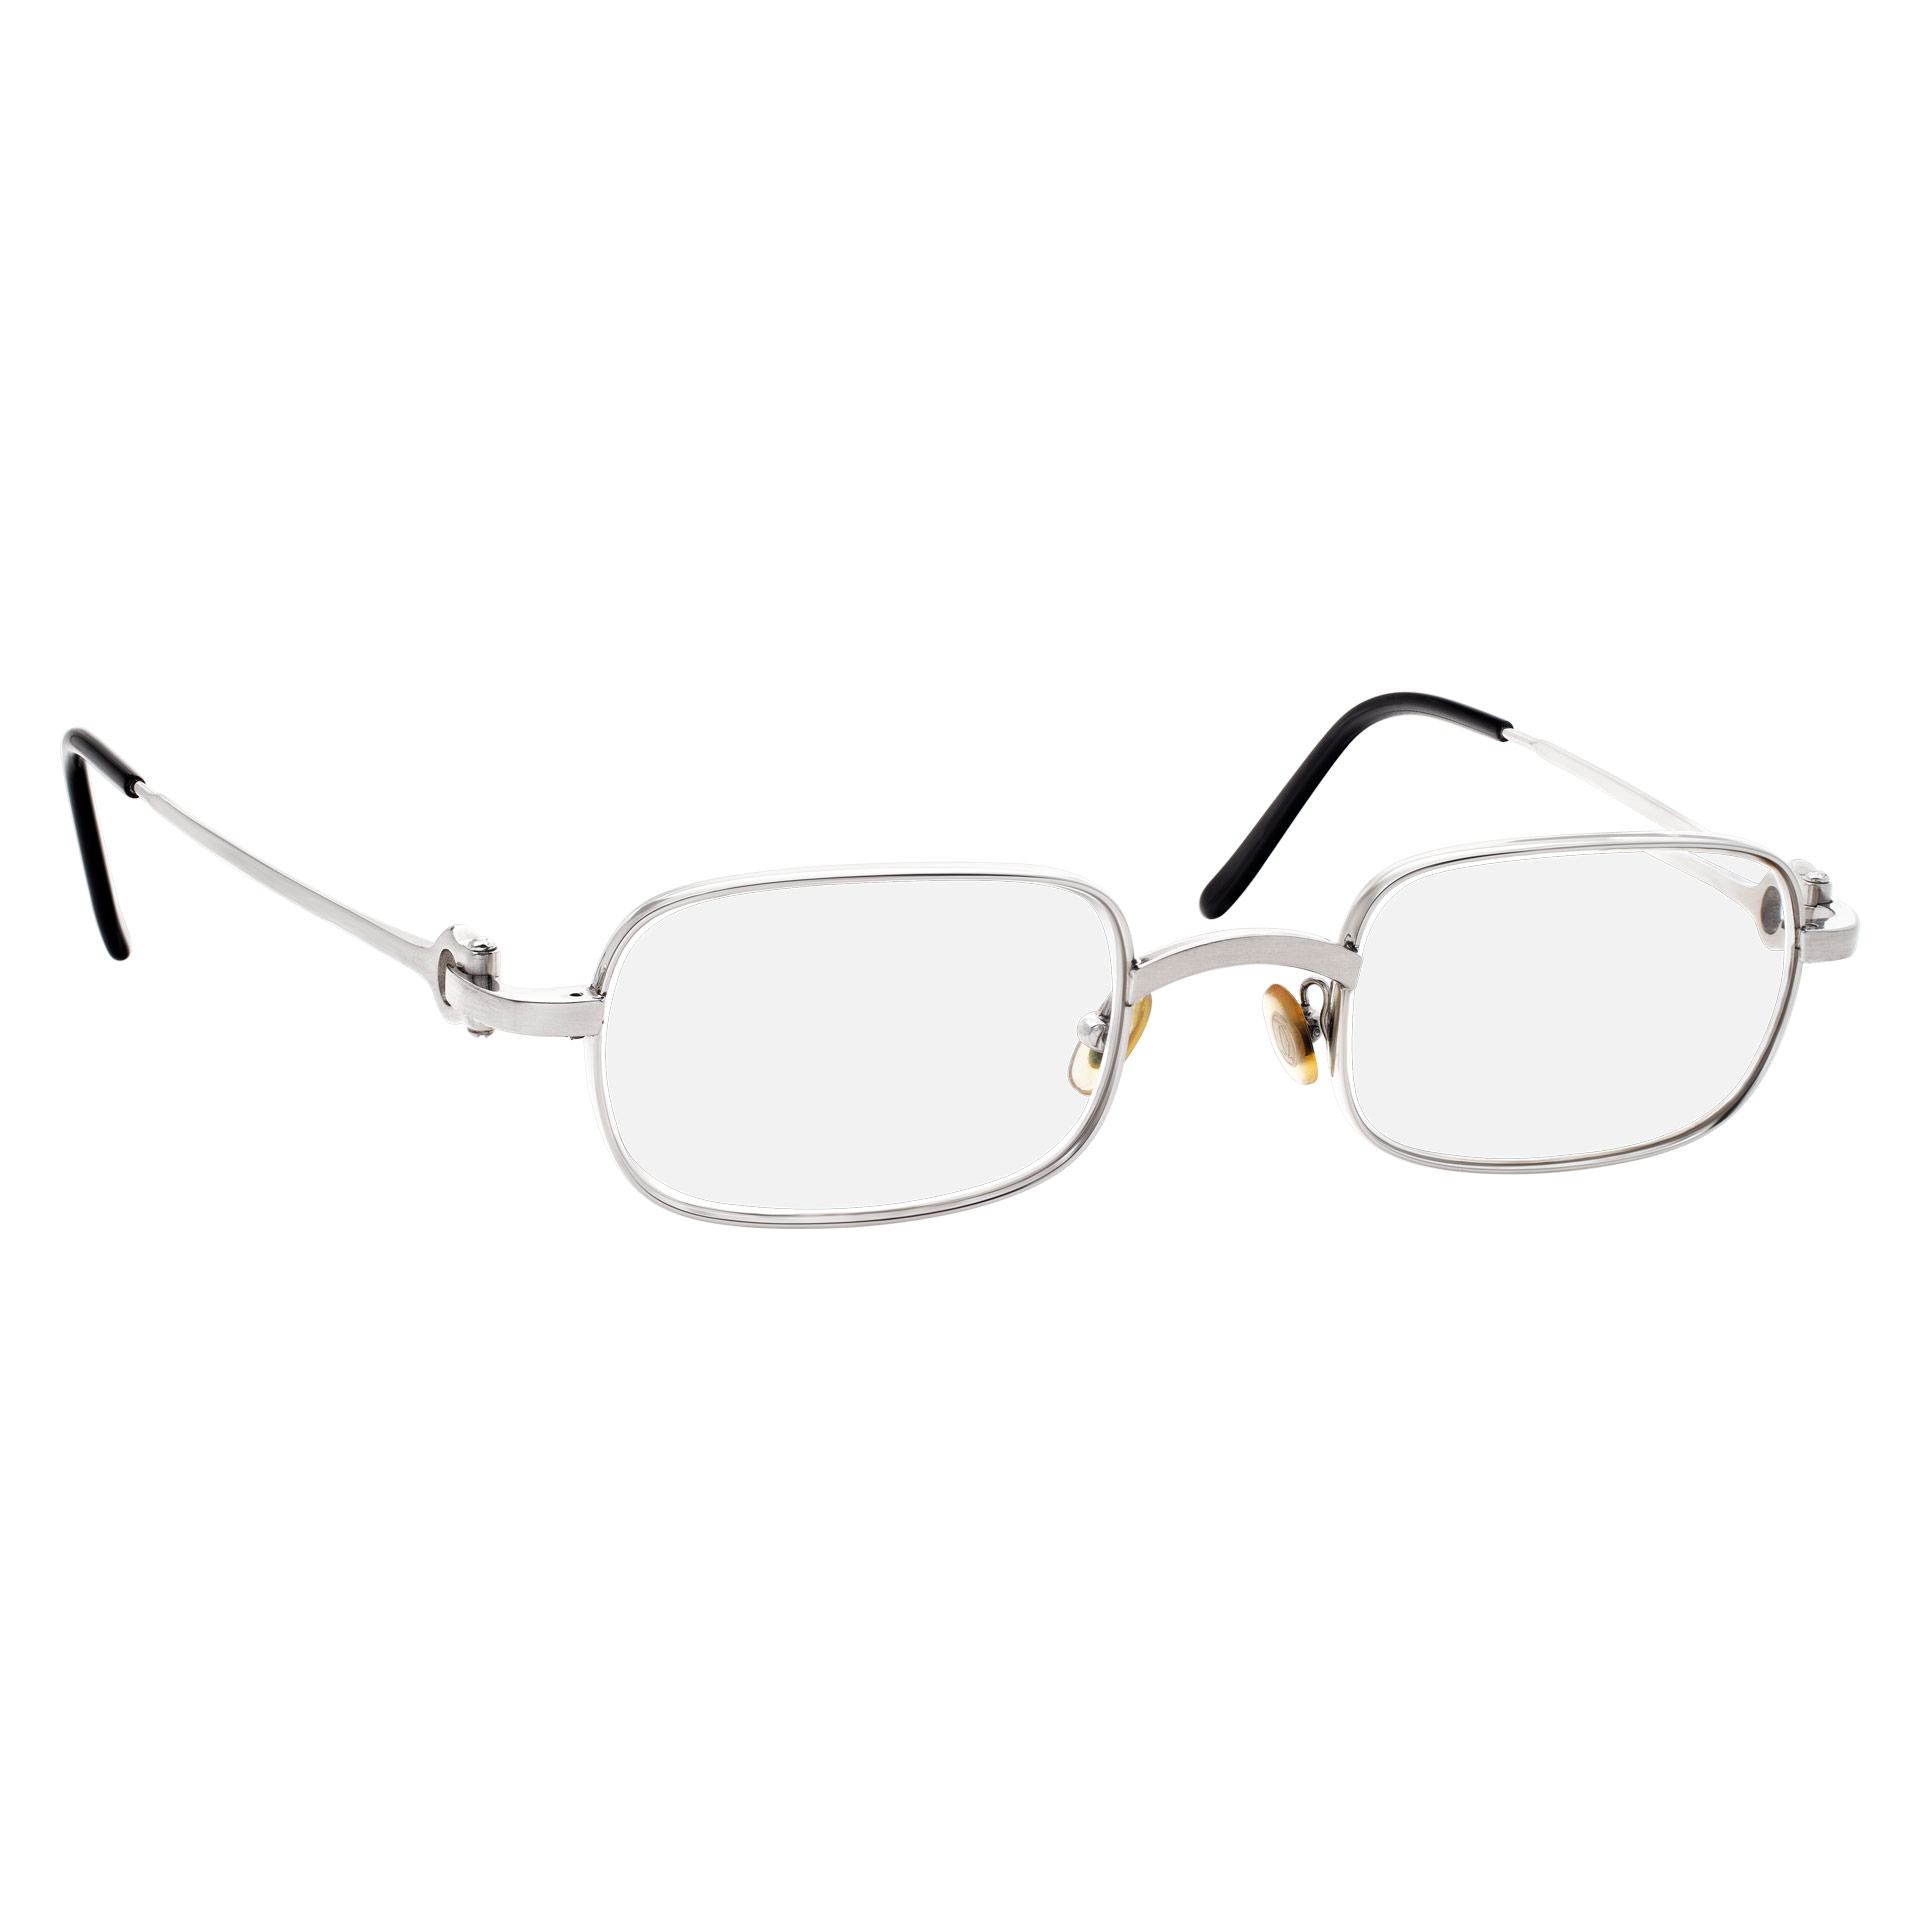 Cartier Bolon model frame glasses in stainless steel